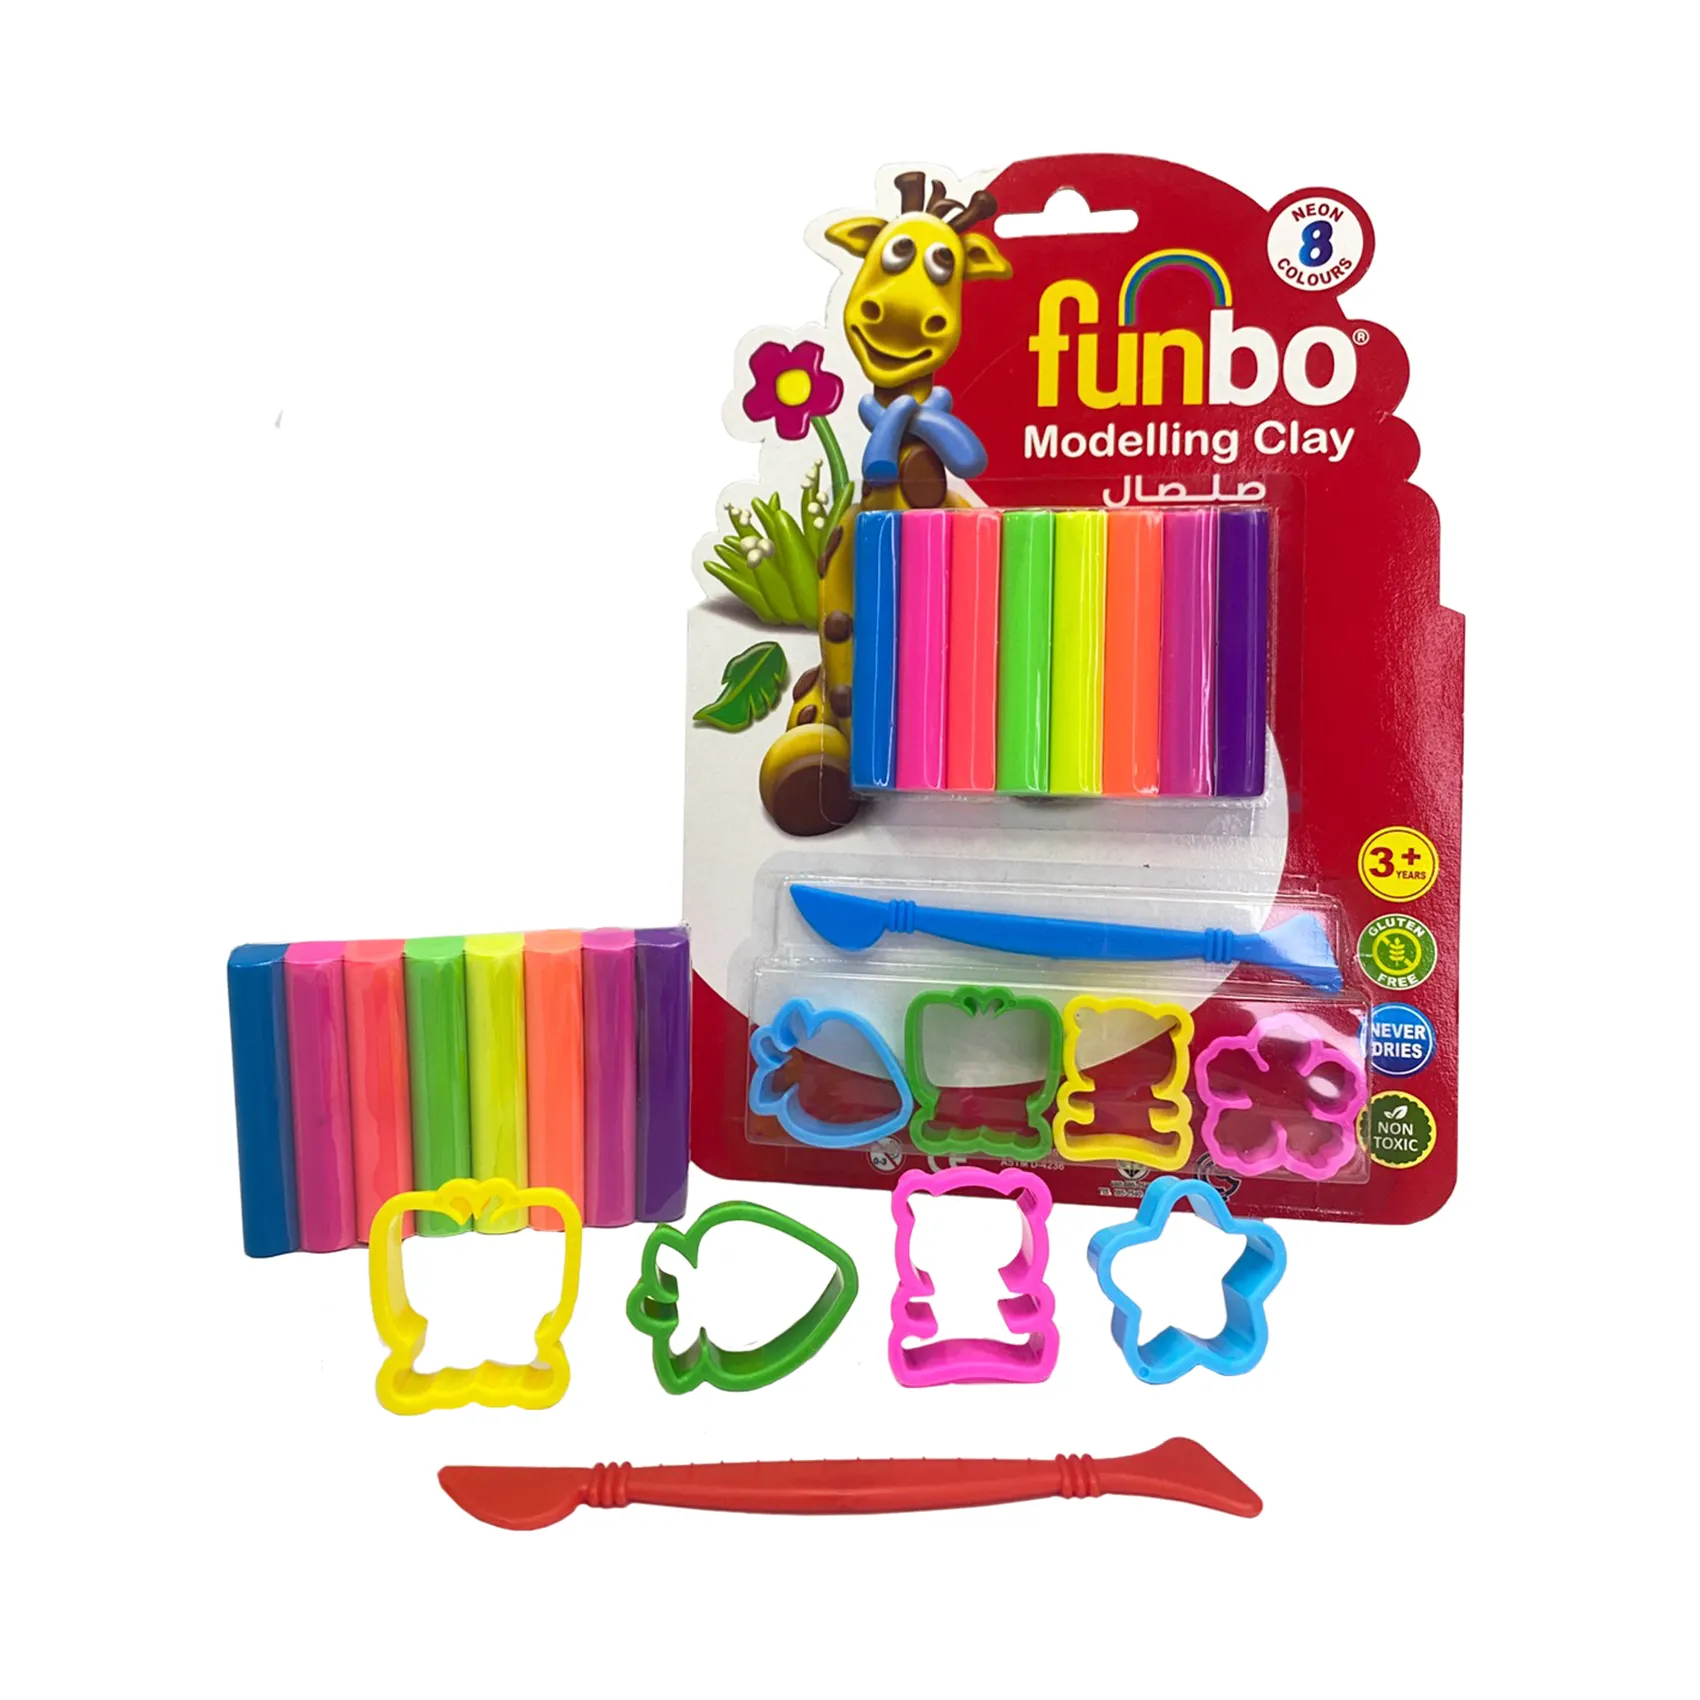 Funbo sicher für Kinder Modell ier masse 100 Gramm in 8 Neon farben mit 3 Formen und einem Trimmer ungiftig gluten frei